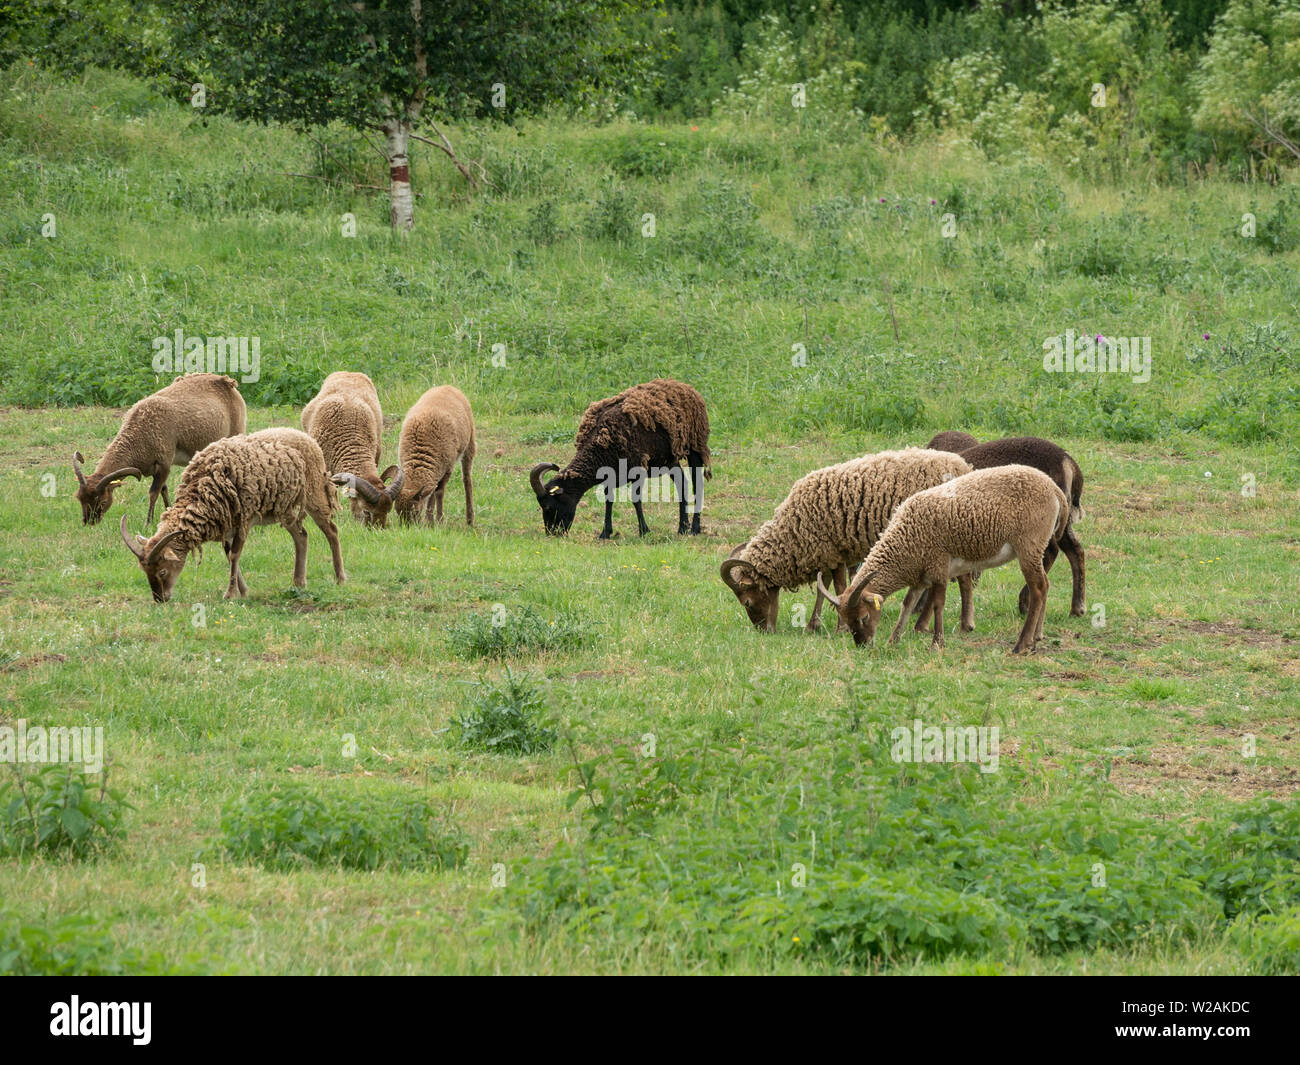 Eine Herde von Soay-schafe als Schafe, eine seltene Rasse der Schafe (Ovis aries) mit Hörnern und Braun woolly Vliese Beweidung in Gras Feld in Cambridgeshire, Großbritannien Stockfoto